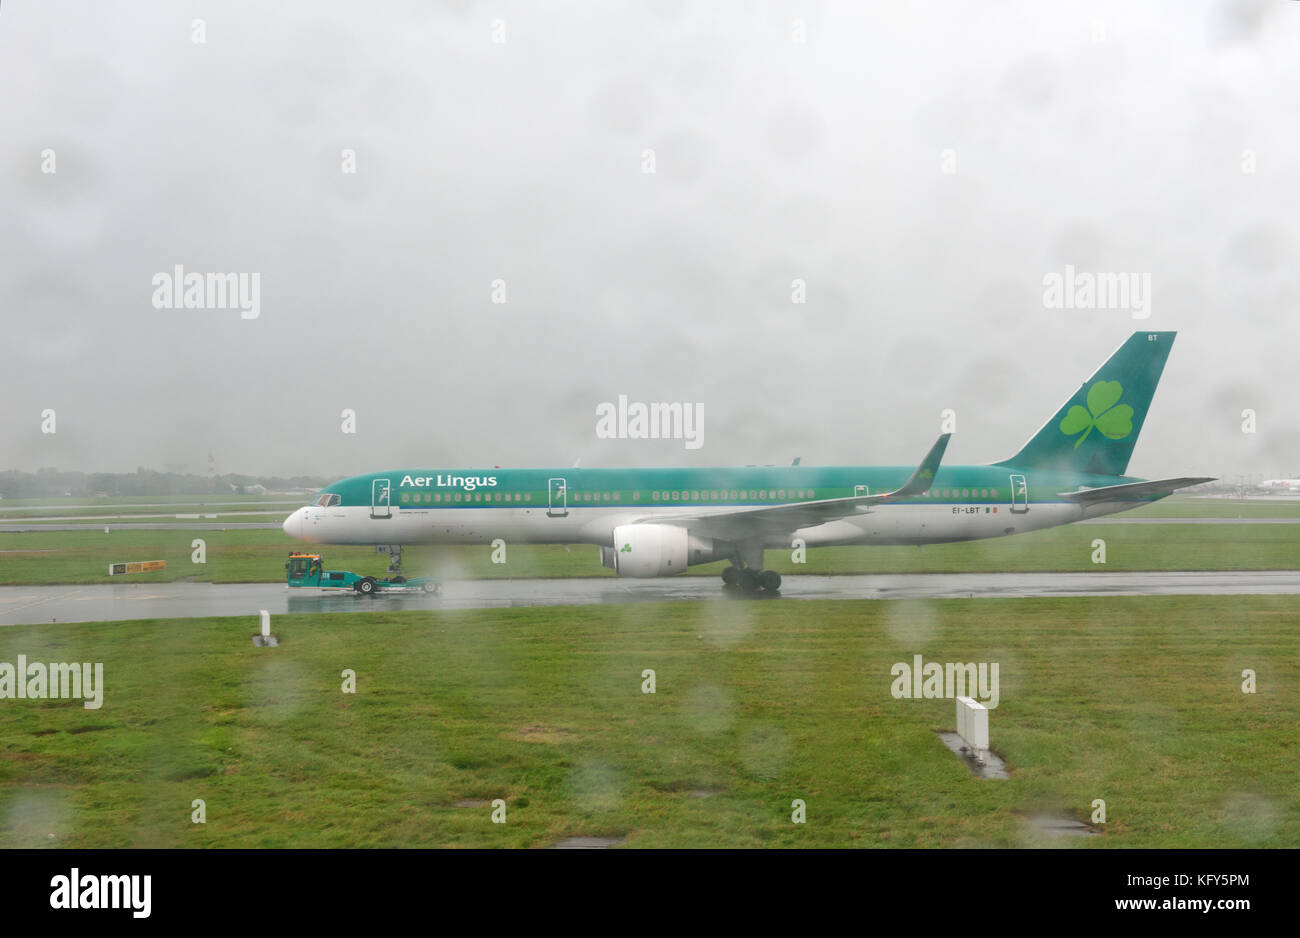 Dublino, Irlanda - 27 September, 2017: Aer Lingus aerei schierati al Terminal 2 dell'aeroporto di Dublino in Irlanda Foto Stock